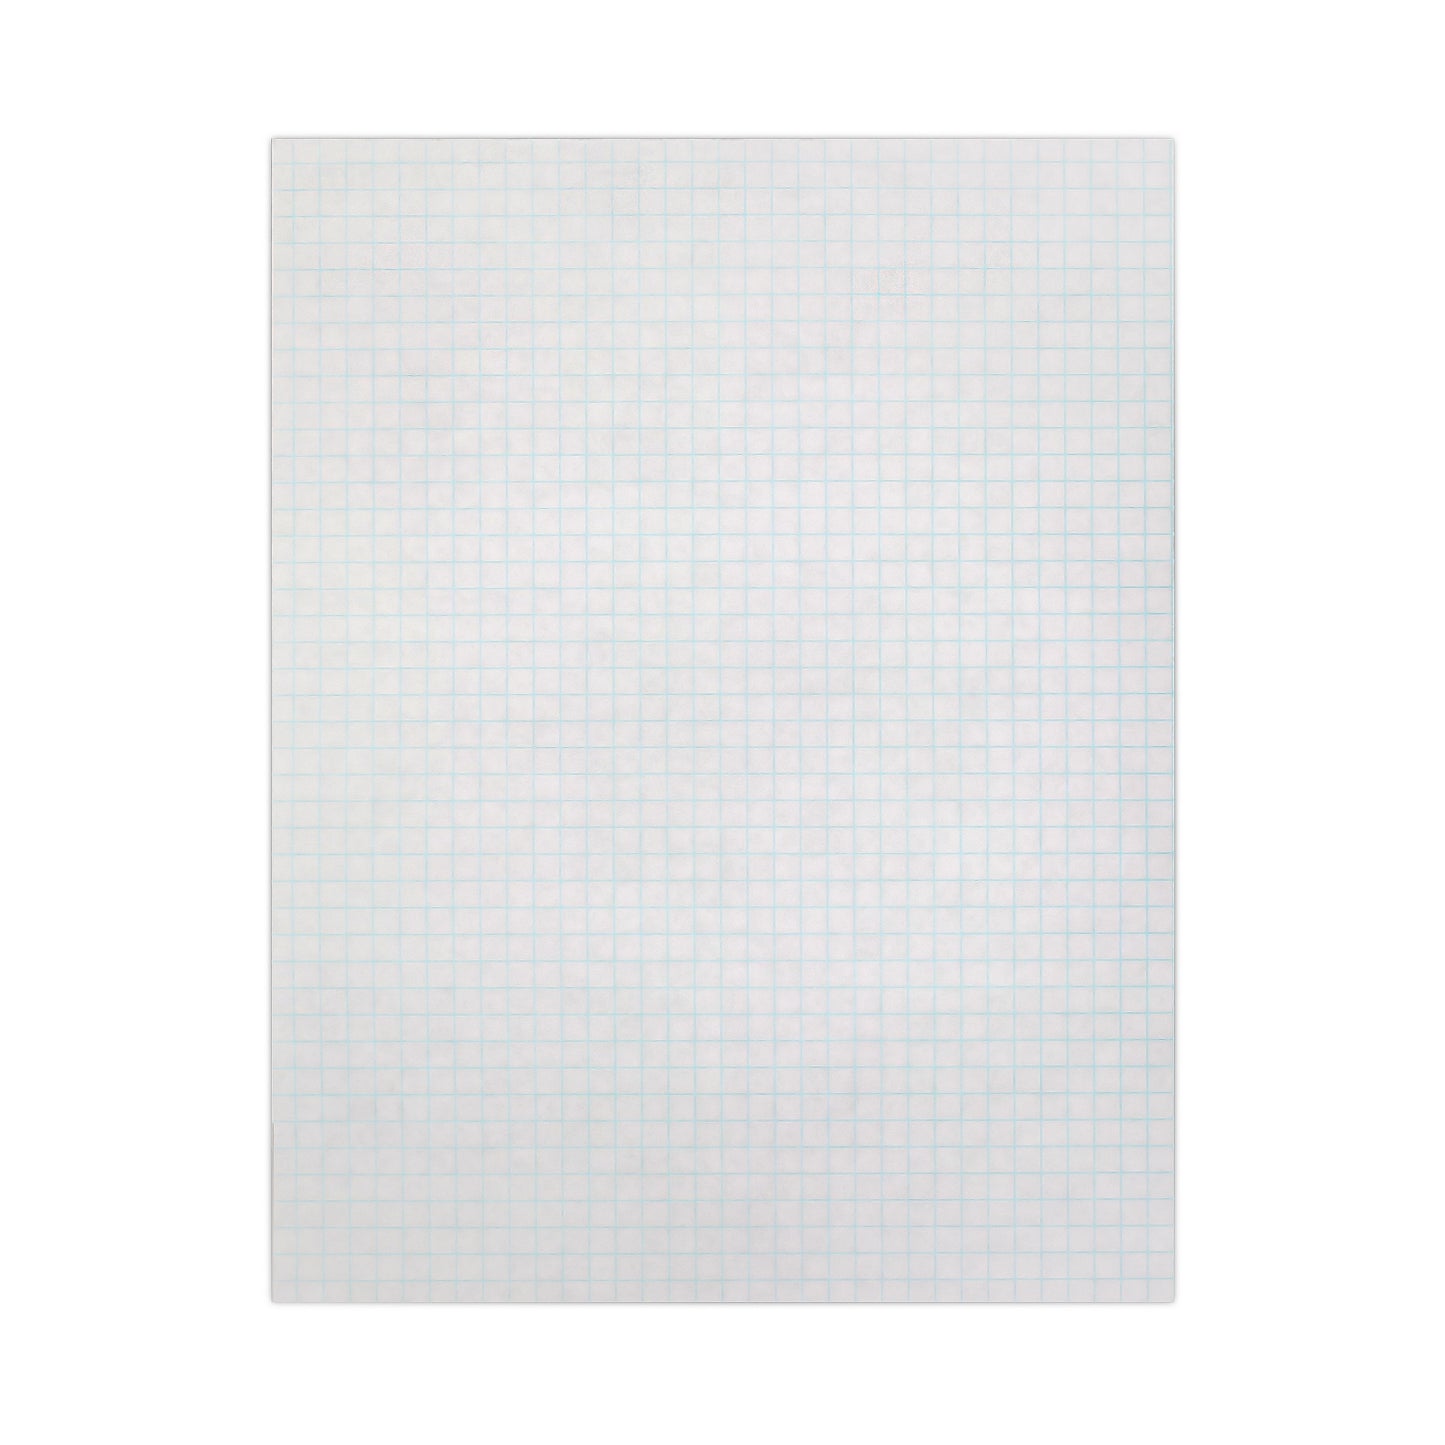 Quadrille Paper Pad 4"x4" Grid